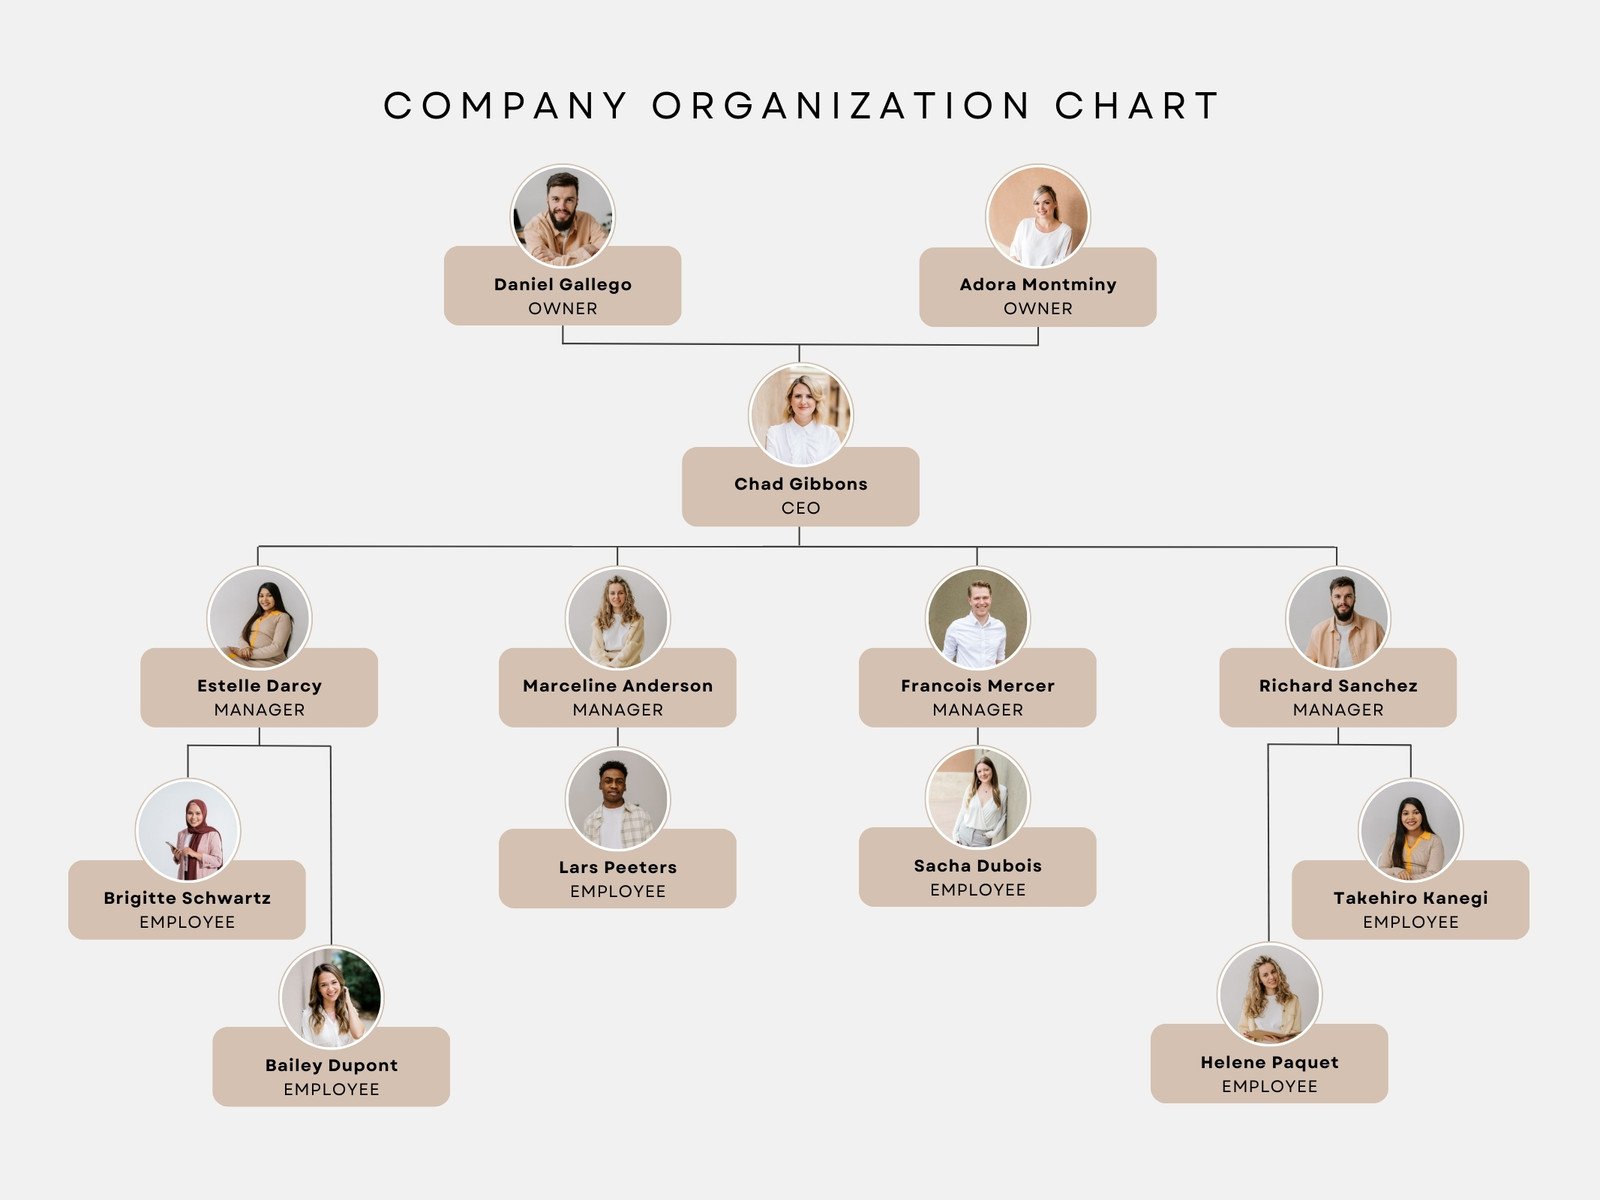 Organizational Chart Free Template